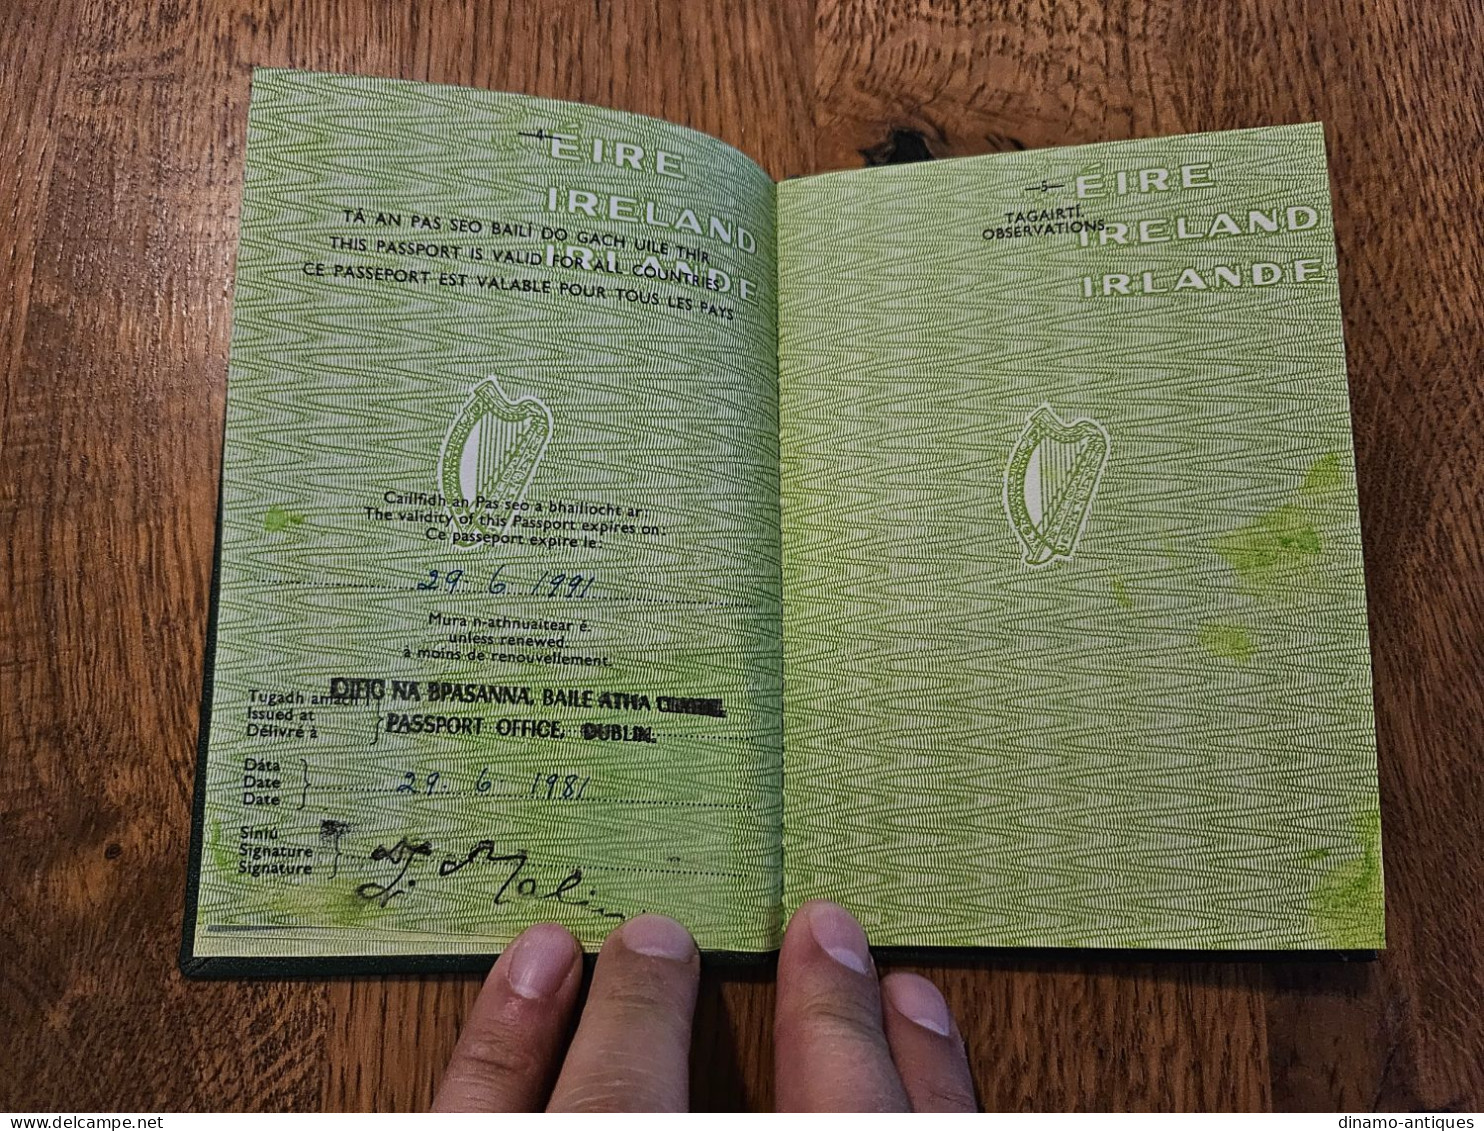 1981 Ireland Eire Passport Passeport Reisepass Issued In Dublin - Great Condition - Historische Dokumente